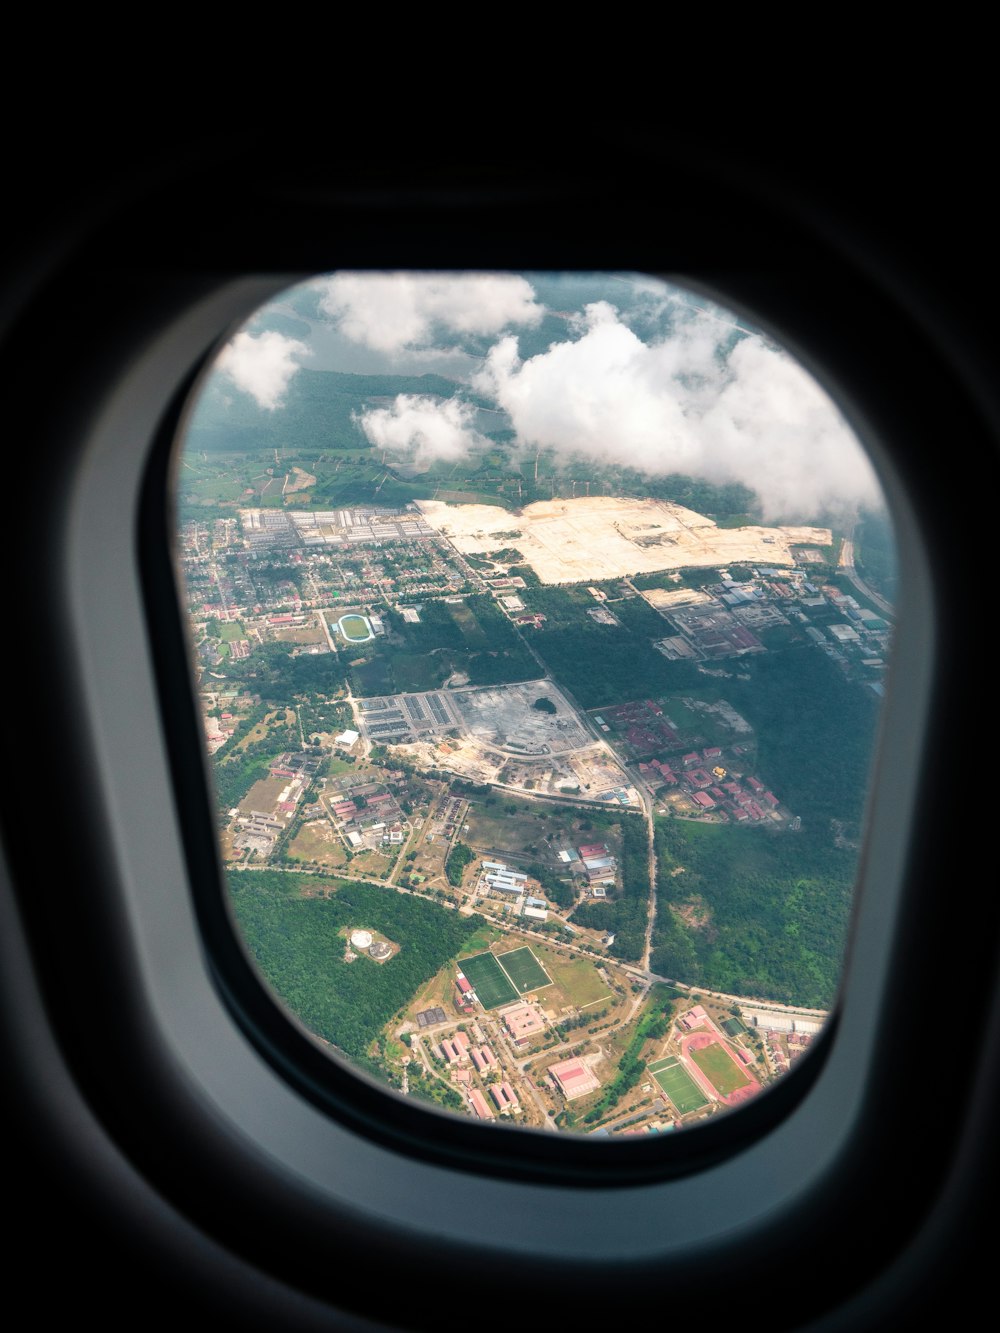 fotografia aerea di un'area rurale attraverso il finestrino dell'aereo